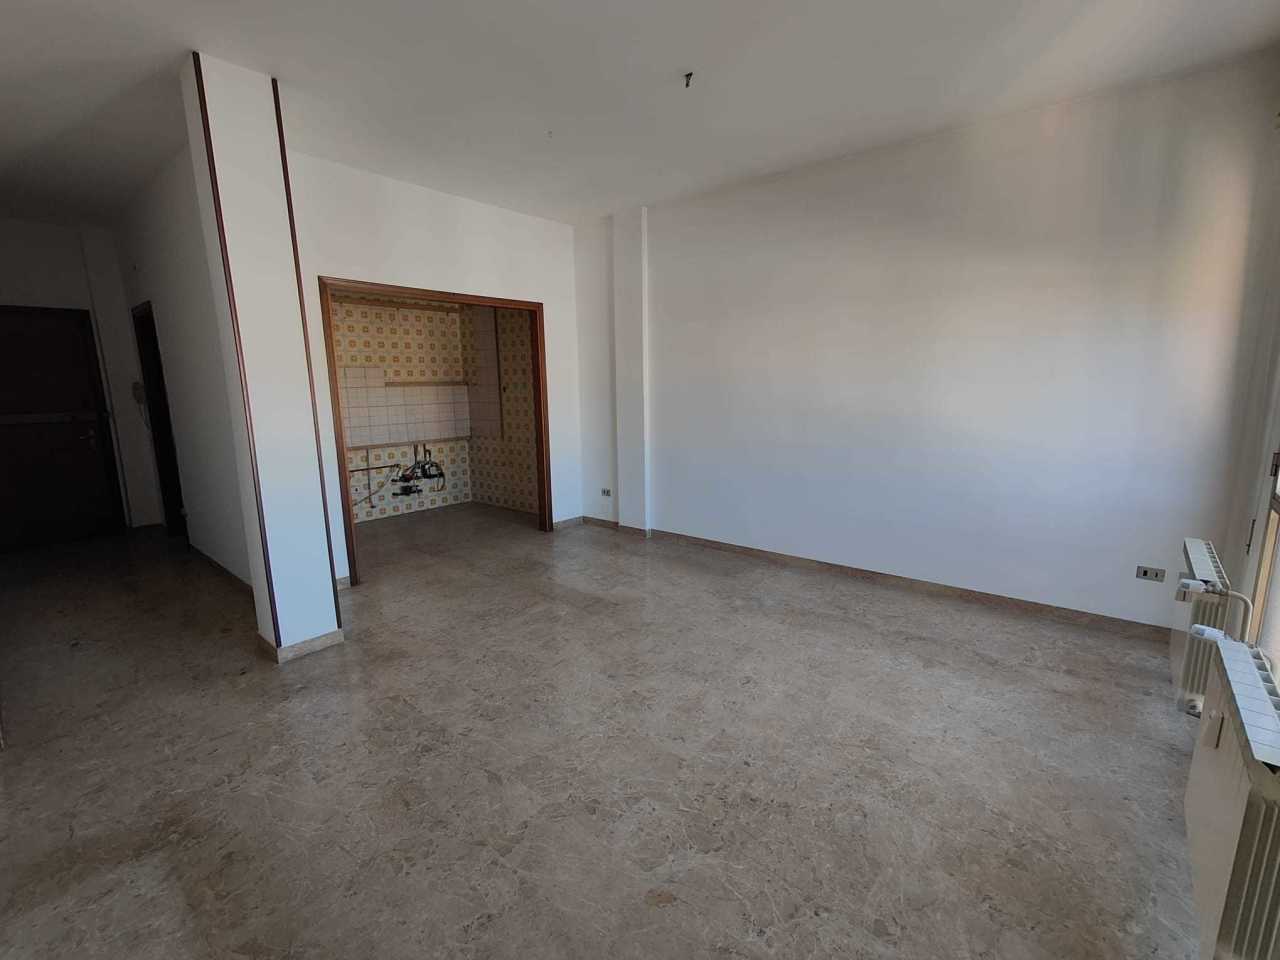 Appartamento in vendita a Rovigo, 5 locali, prezzo € 58.000 | PortaleAgenzieImmobiliari.it